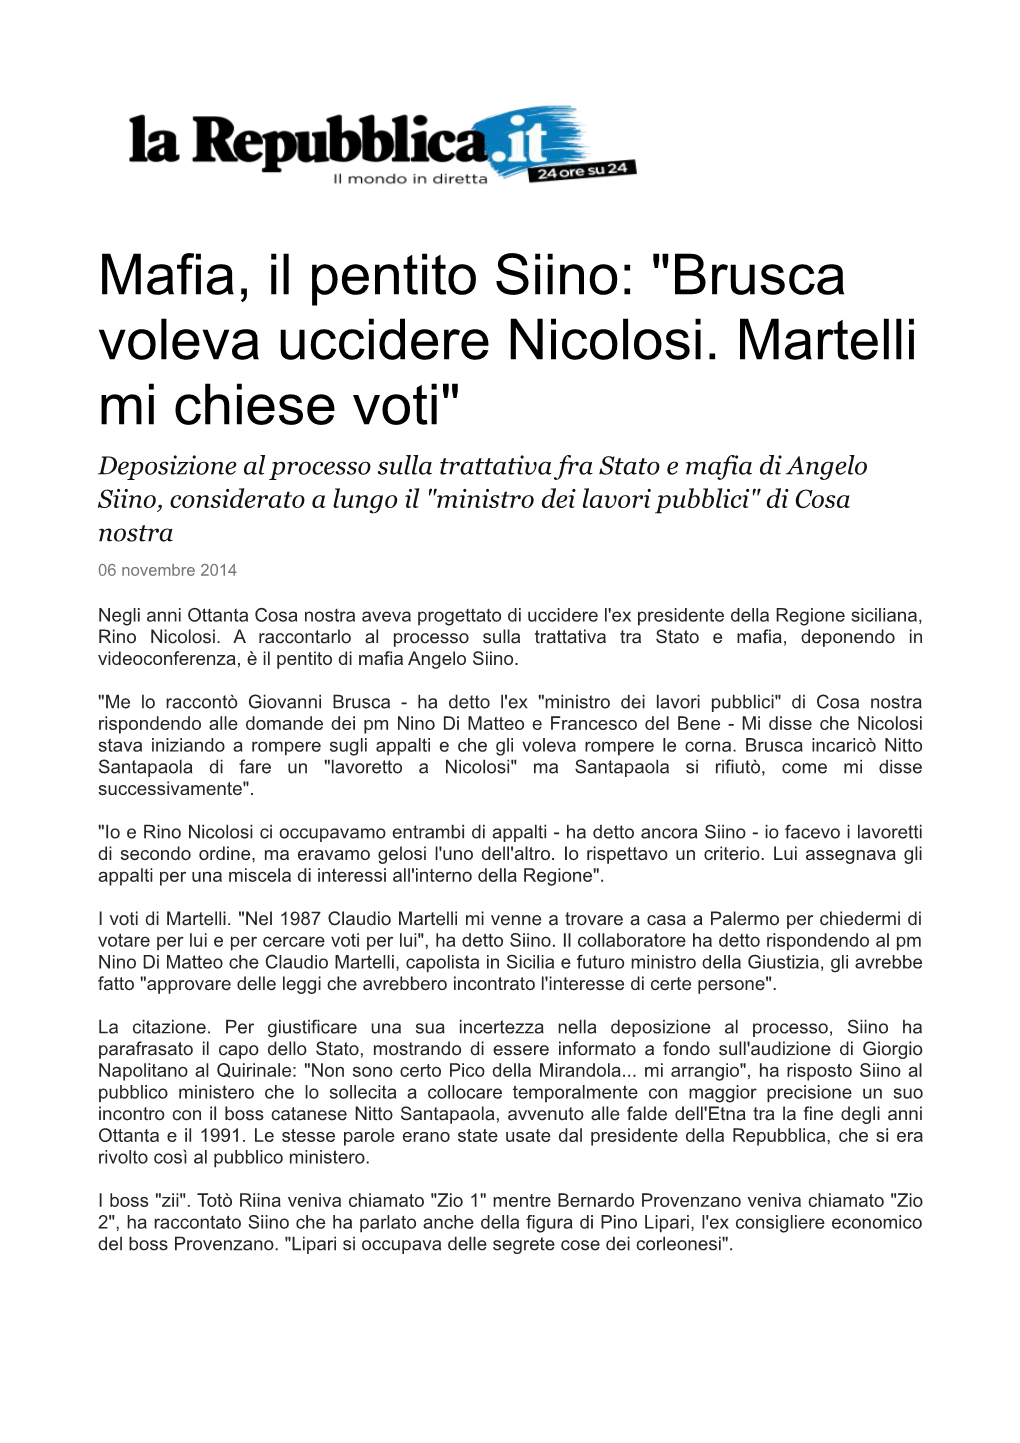 Mafia, Il Pentito Siino: "Brusca Voleva Uccidere Nicolosi